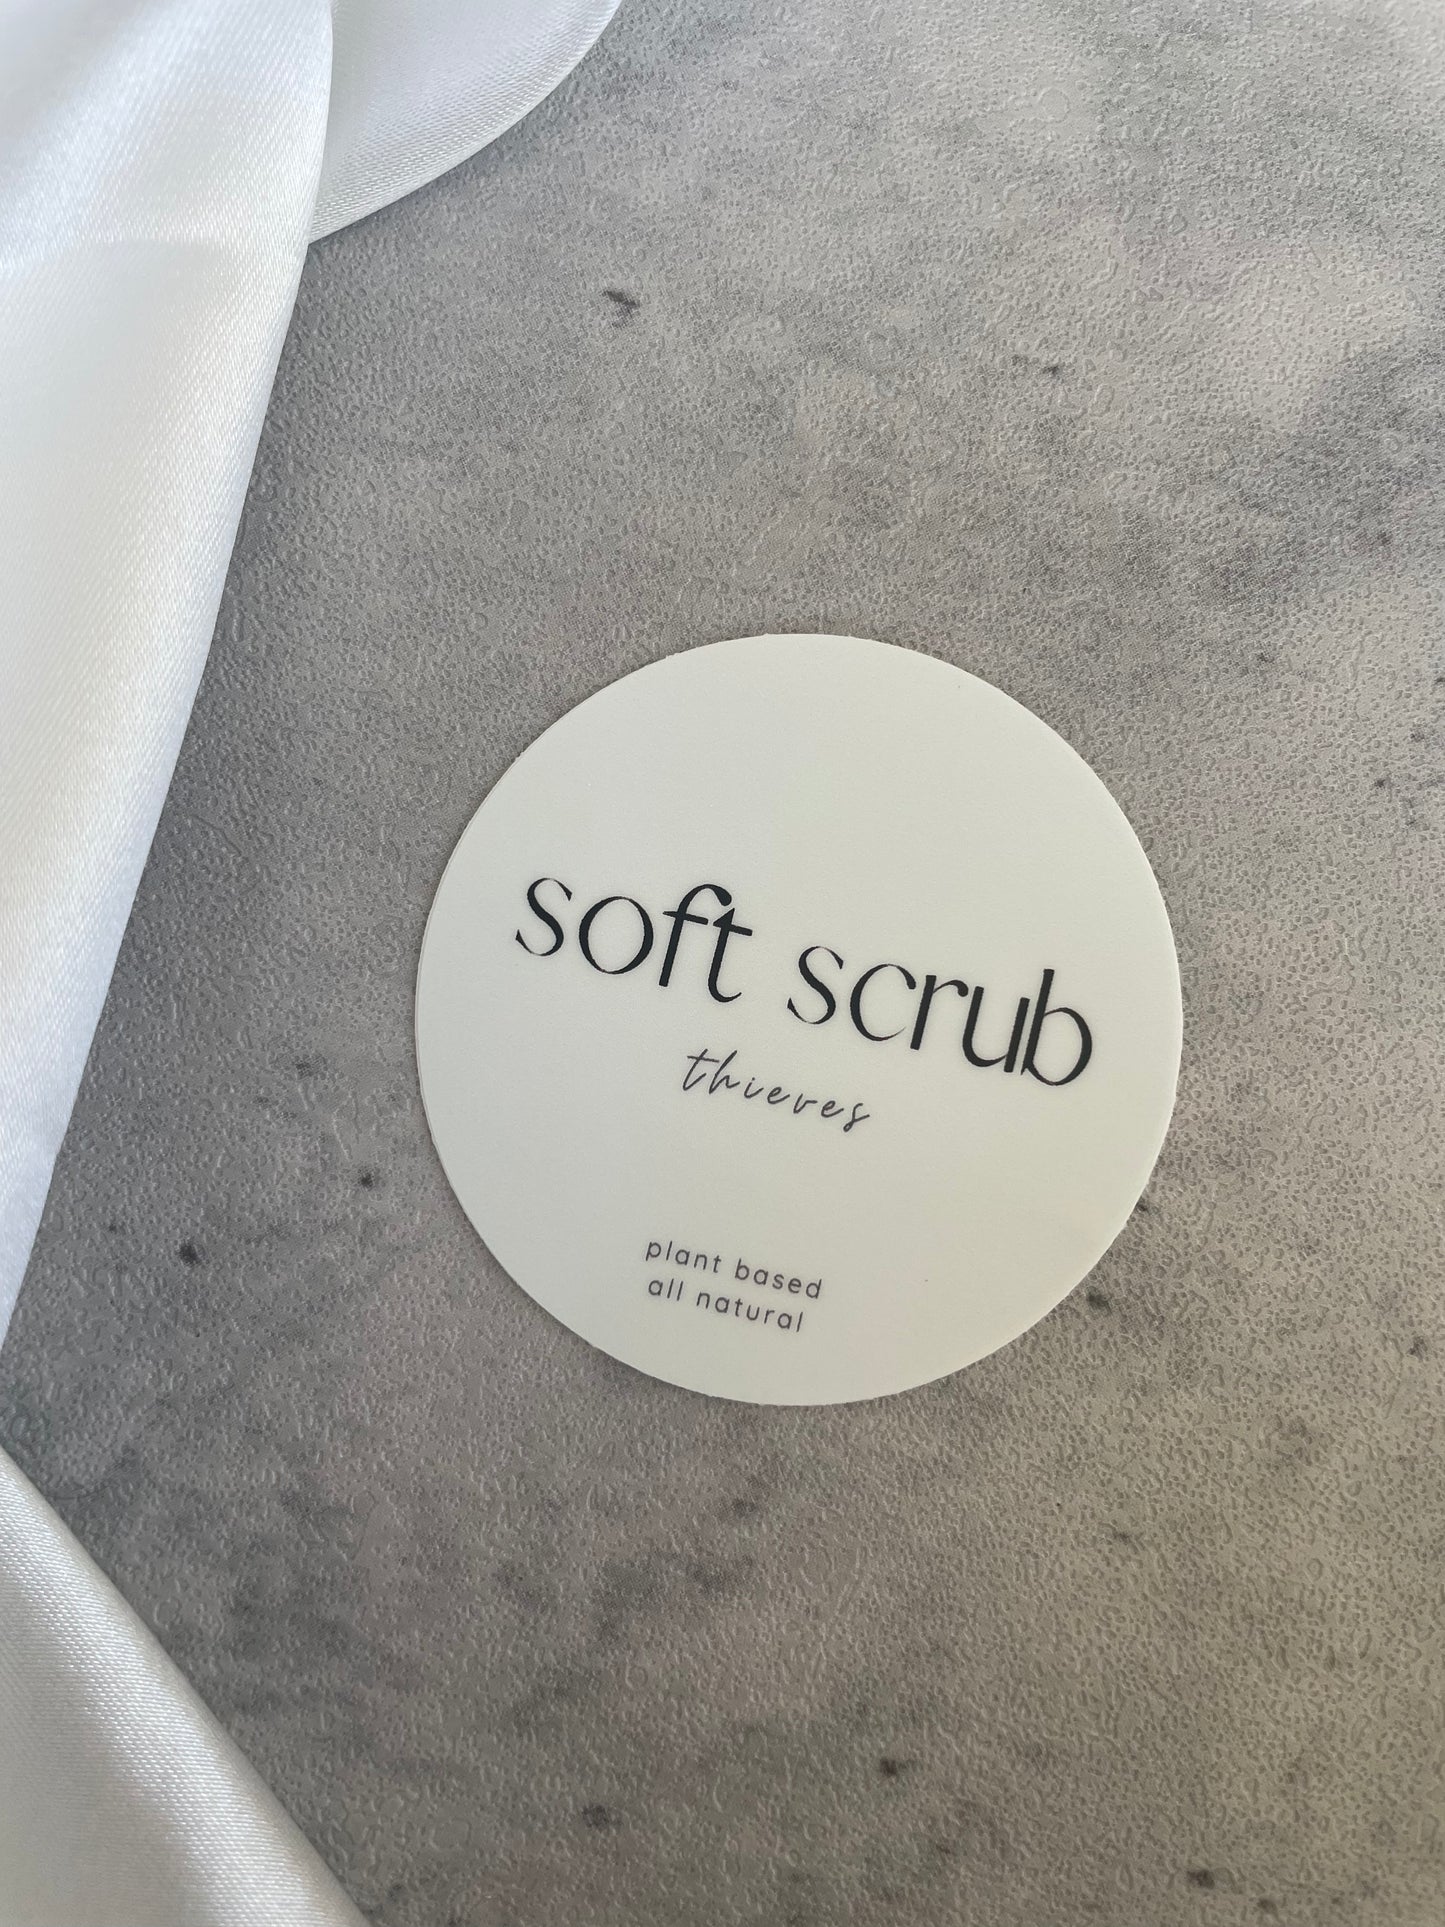 Thieves Soft Scrub Round Label Only || Waterproof Dishwasher Safe Premium Vinyl Label